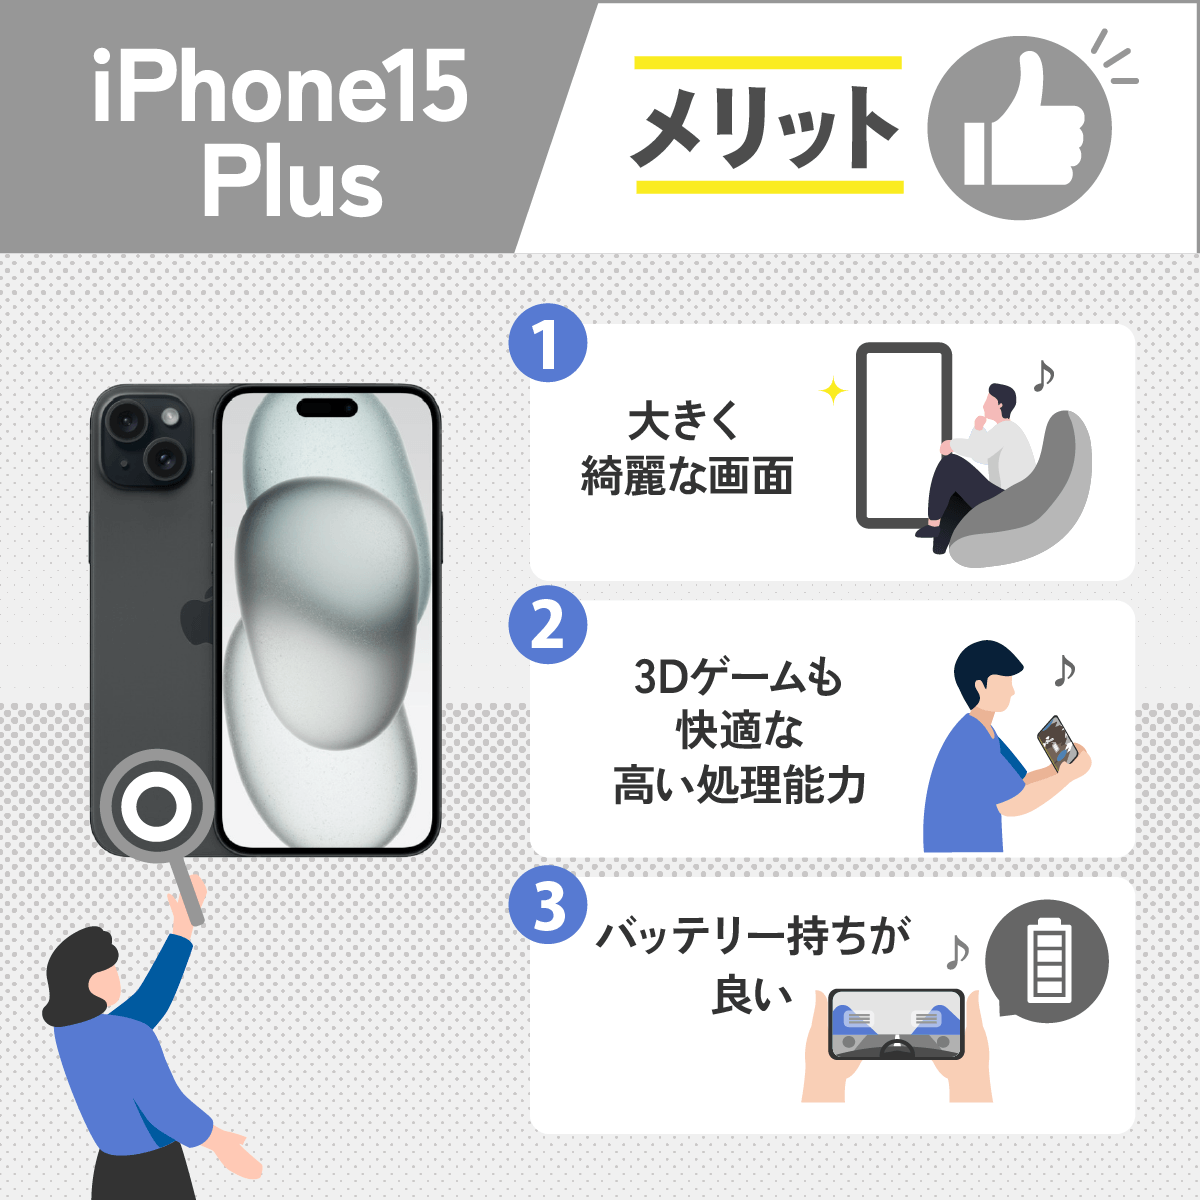 iPhone15 Plusのメリット